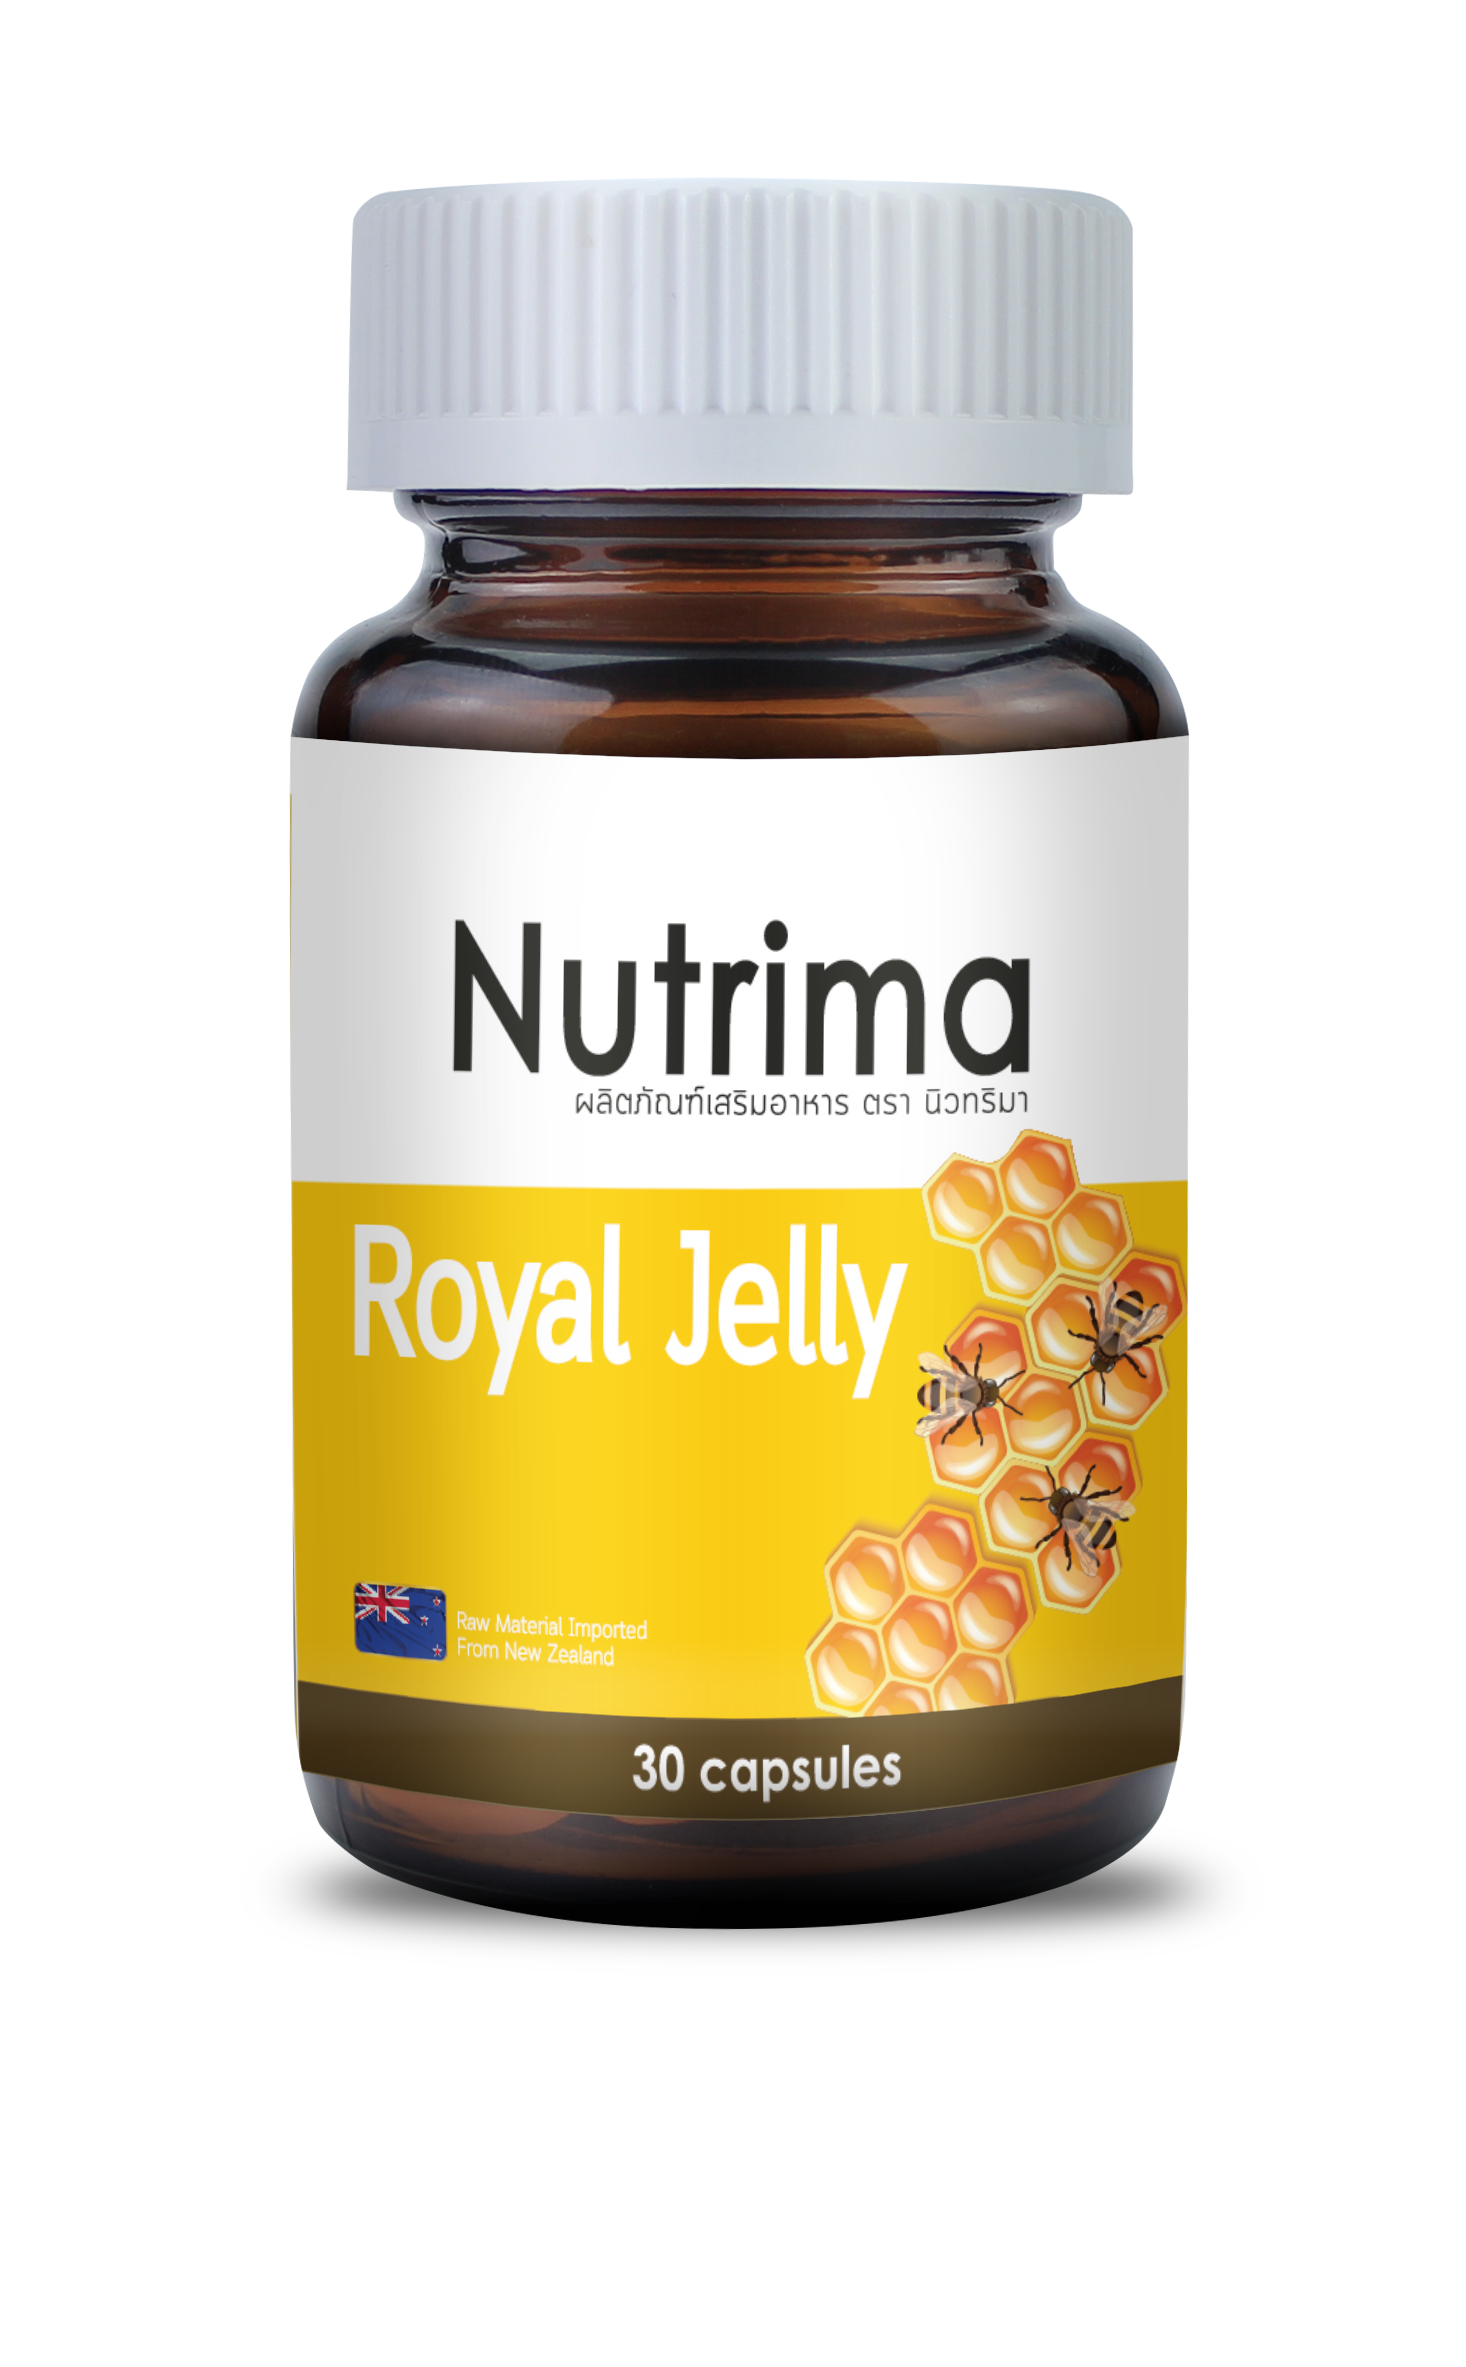 Images/Blog/VjnMqnpn-NEW TD Nutrima Royal Jelly.png